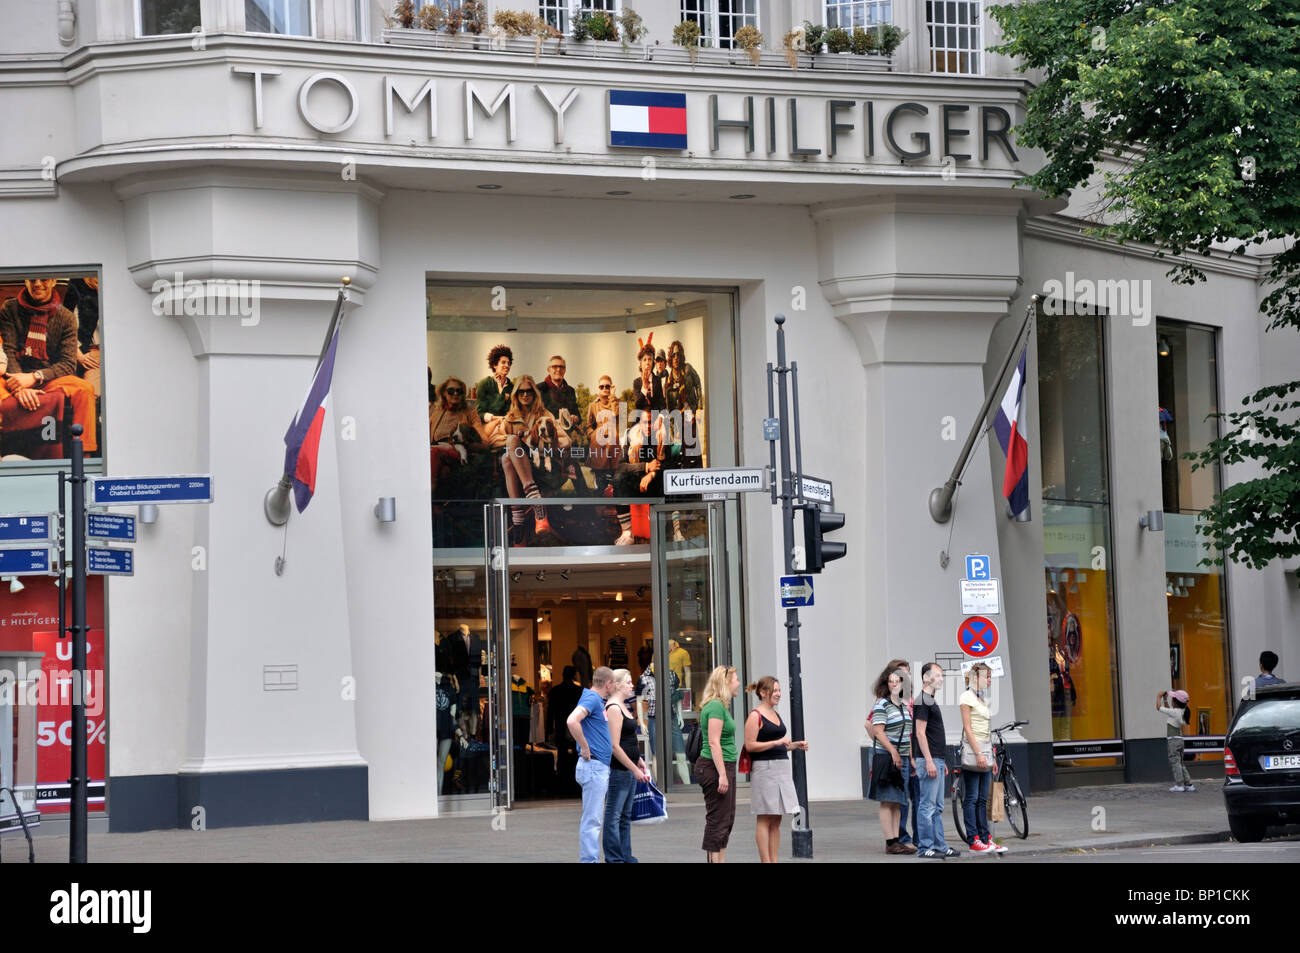 Tommy hilfiger europe Banque de photographies et d'images à haute  résolution - Alamy